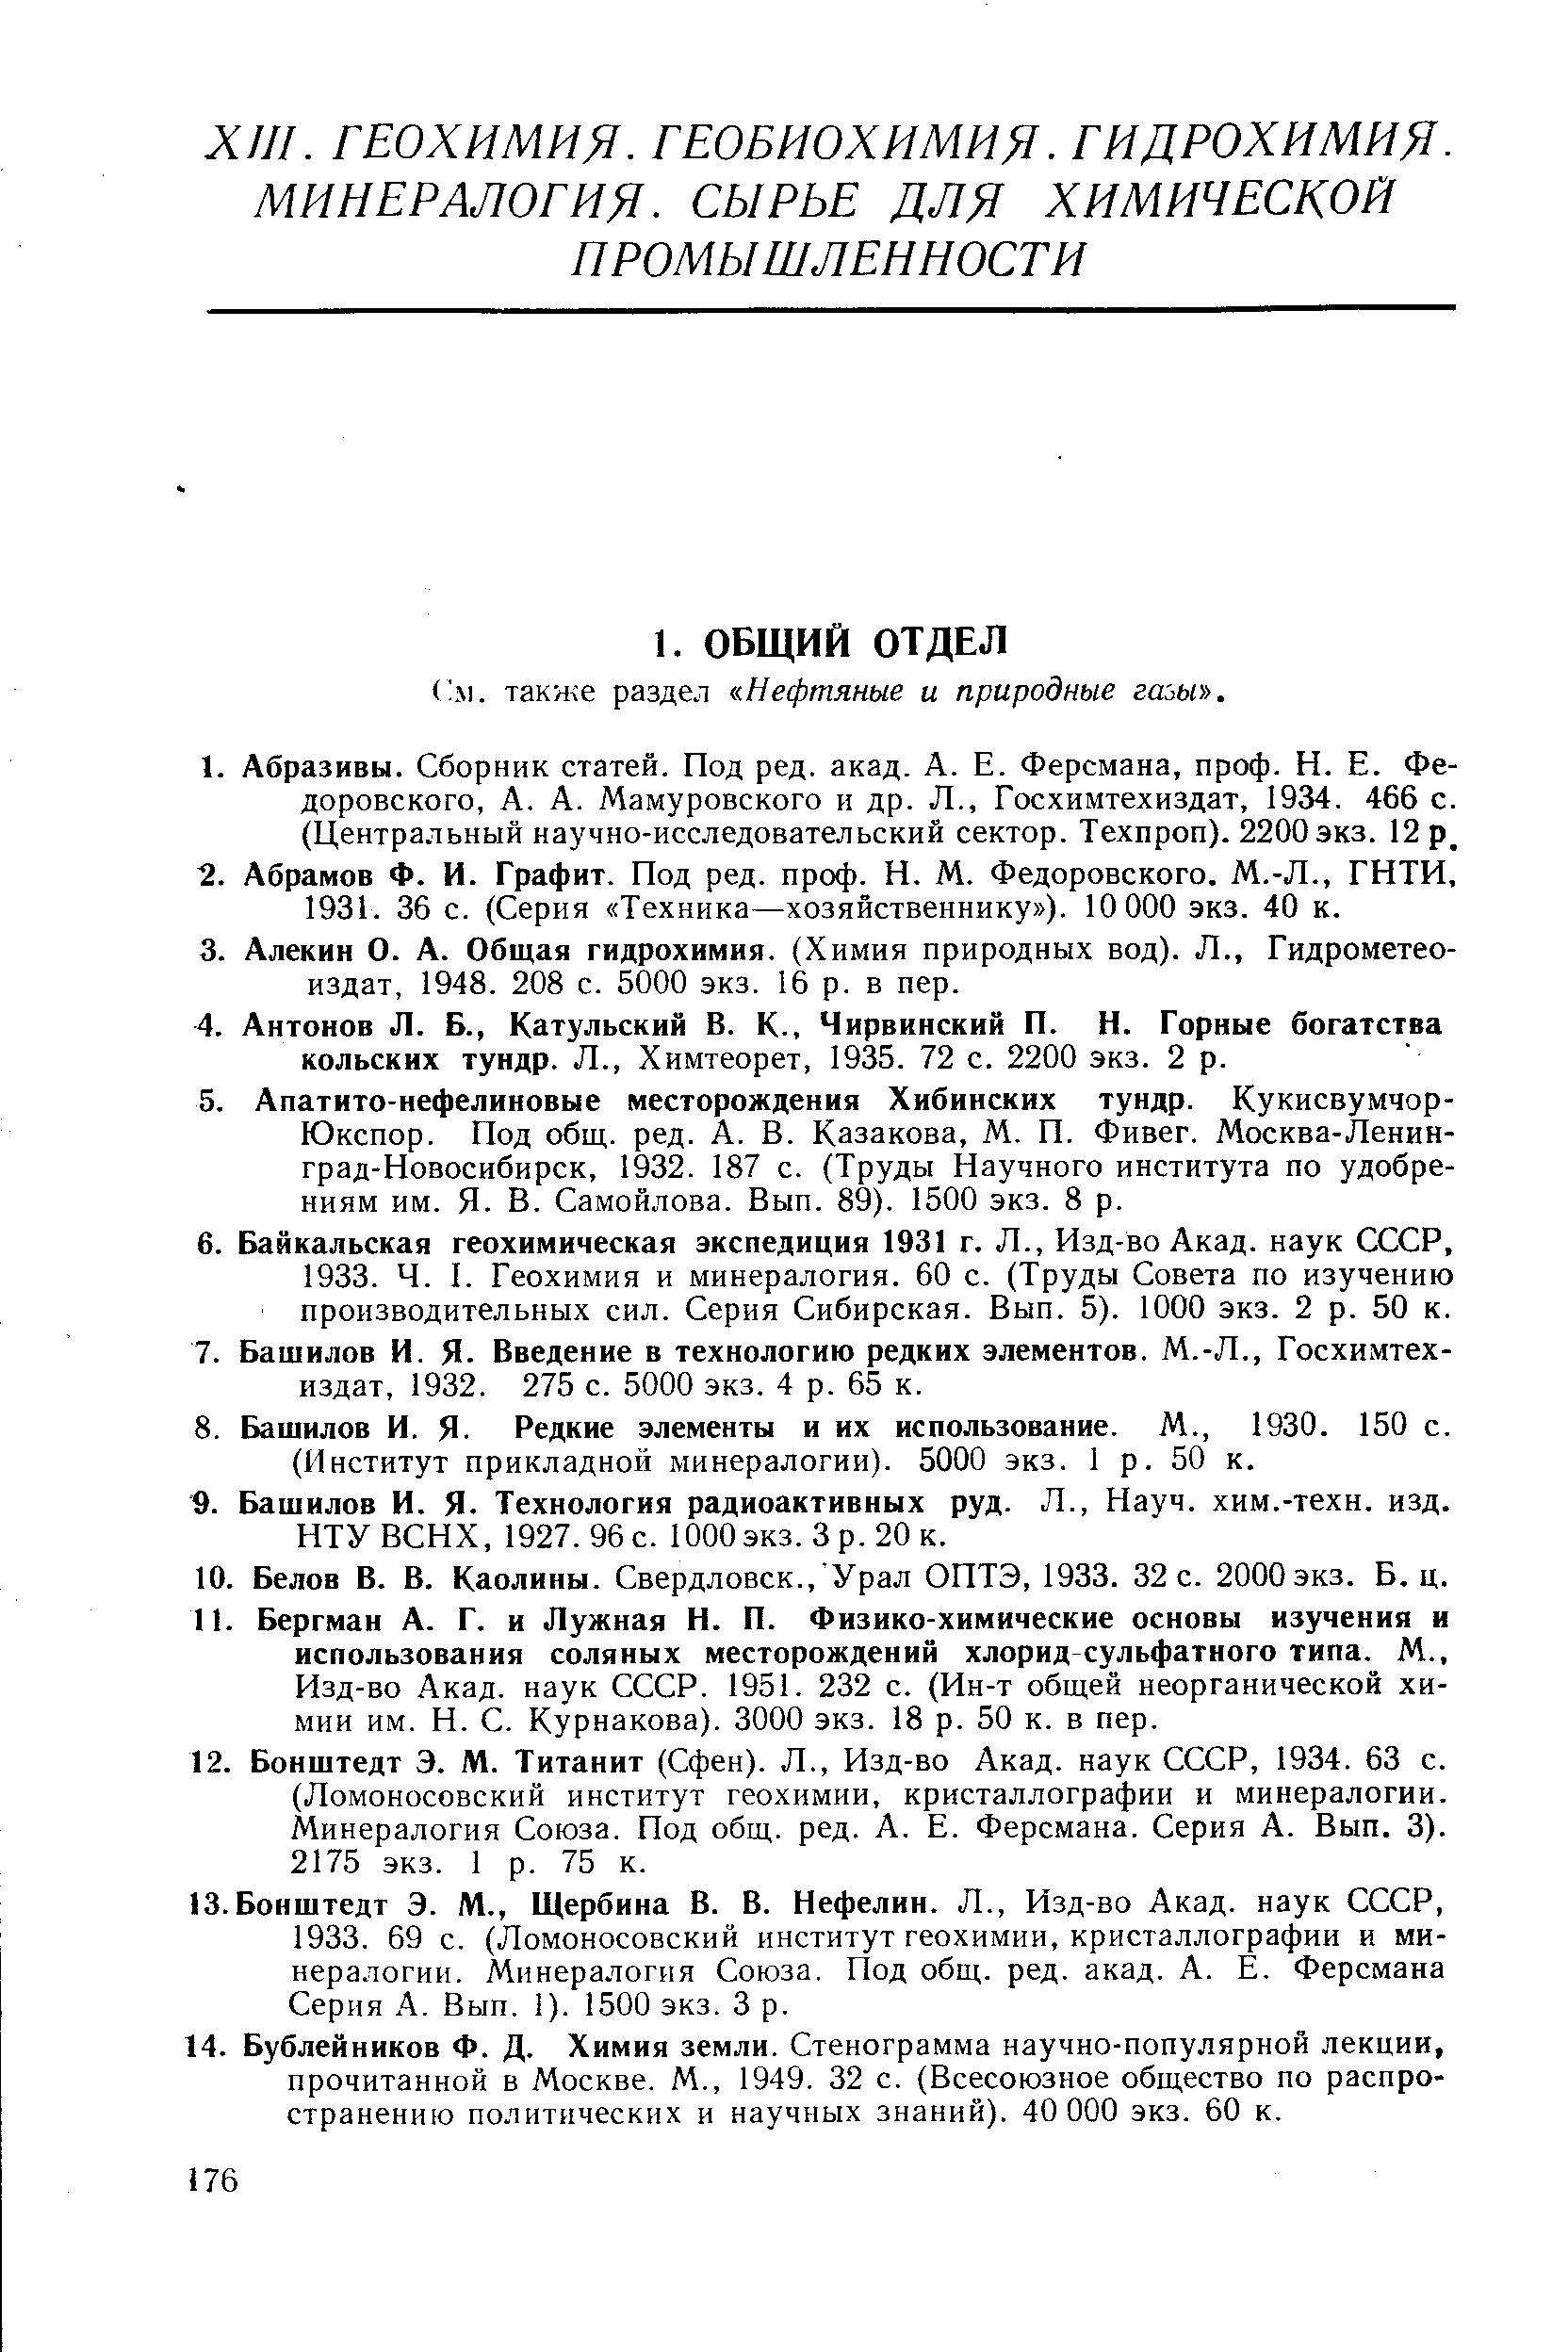 КОЛЬСКИХ тундр, л., Химтеорет, 1935. 72 с. 2200 экз. 2 р.